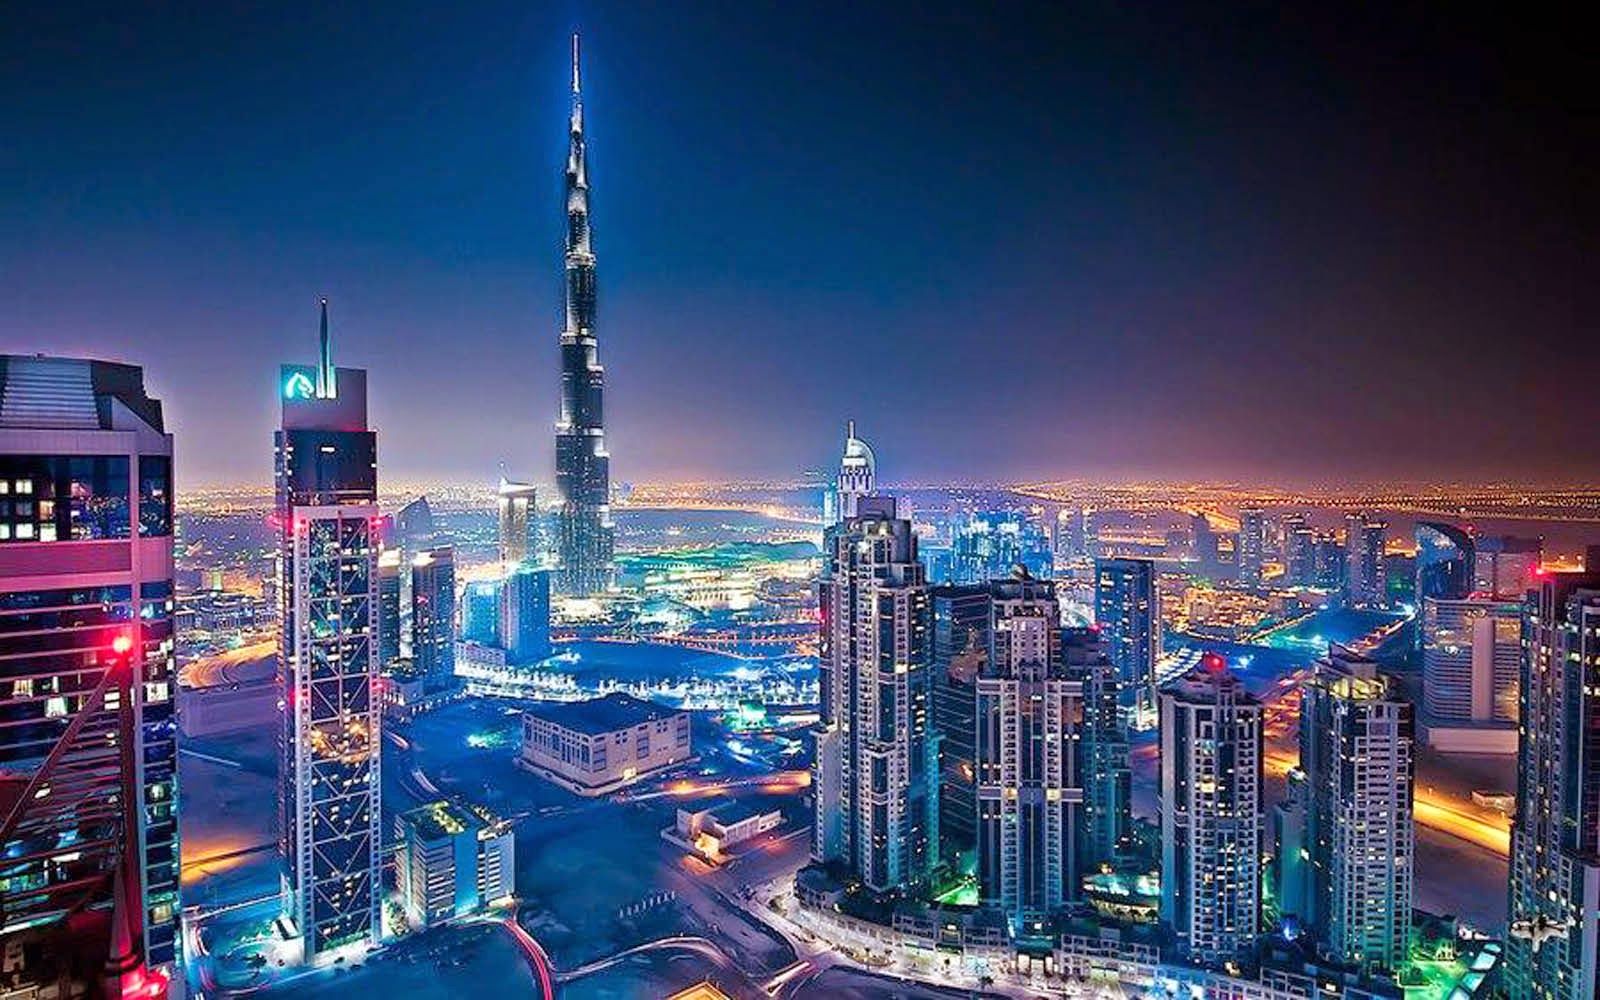 Burj Khalifa Wallpaper. Burj Al Arab Wallpaper, Burj Khalifa Wallpaper and Burj Dubai Wallpaper